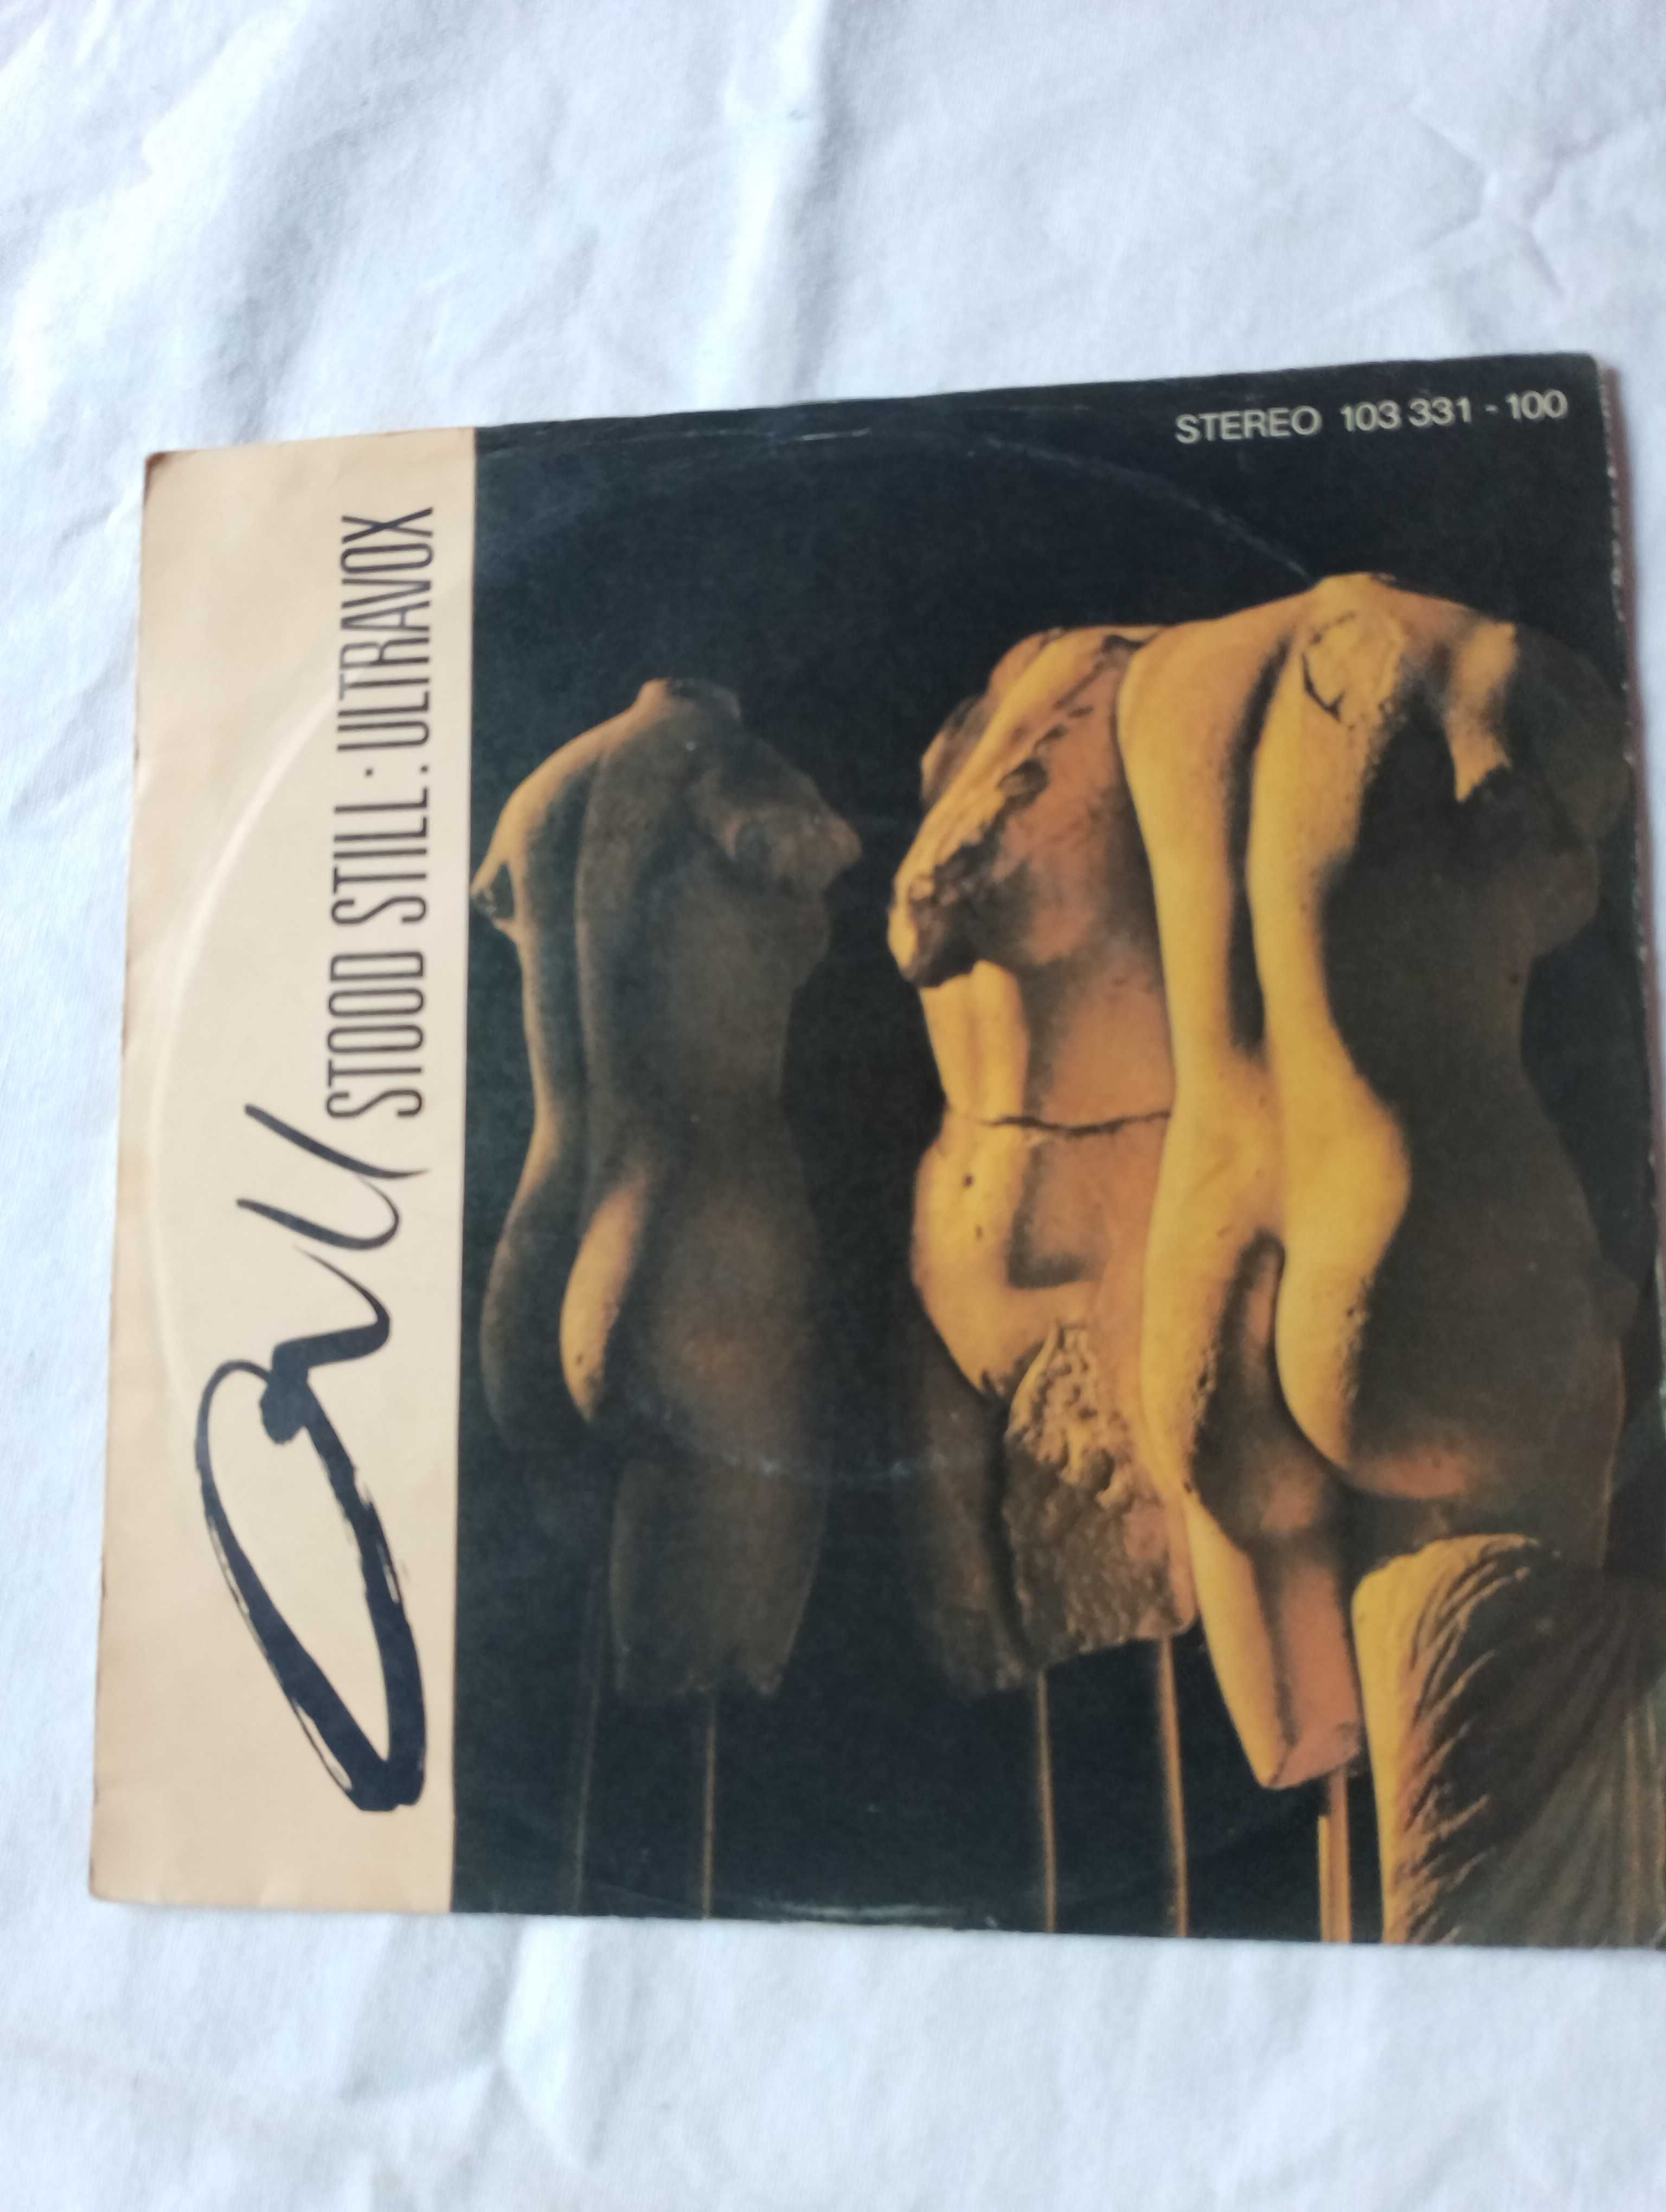 Ultravox - Zestaw vinyle single 7"